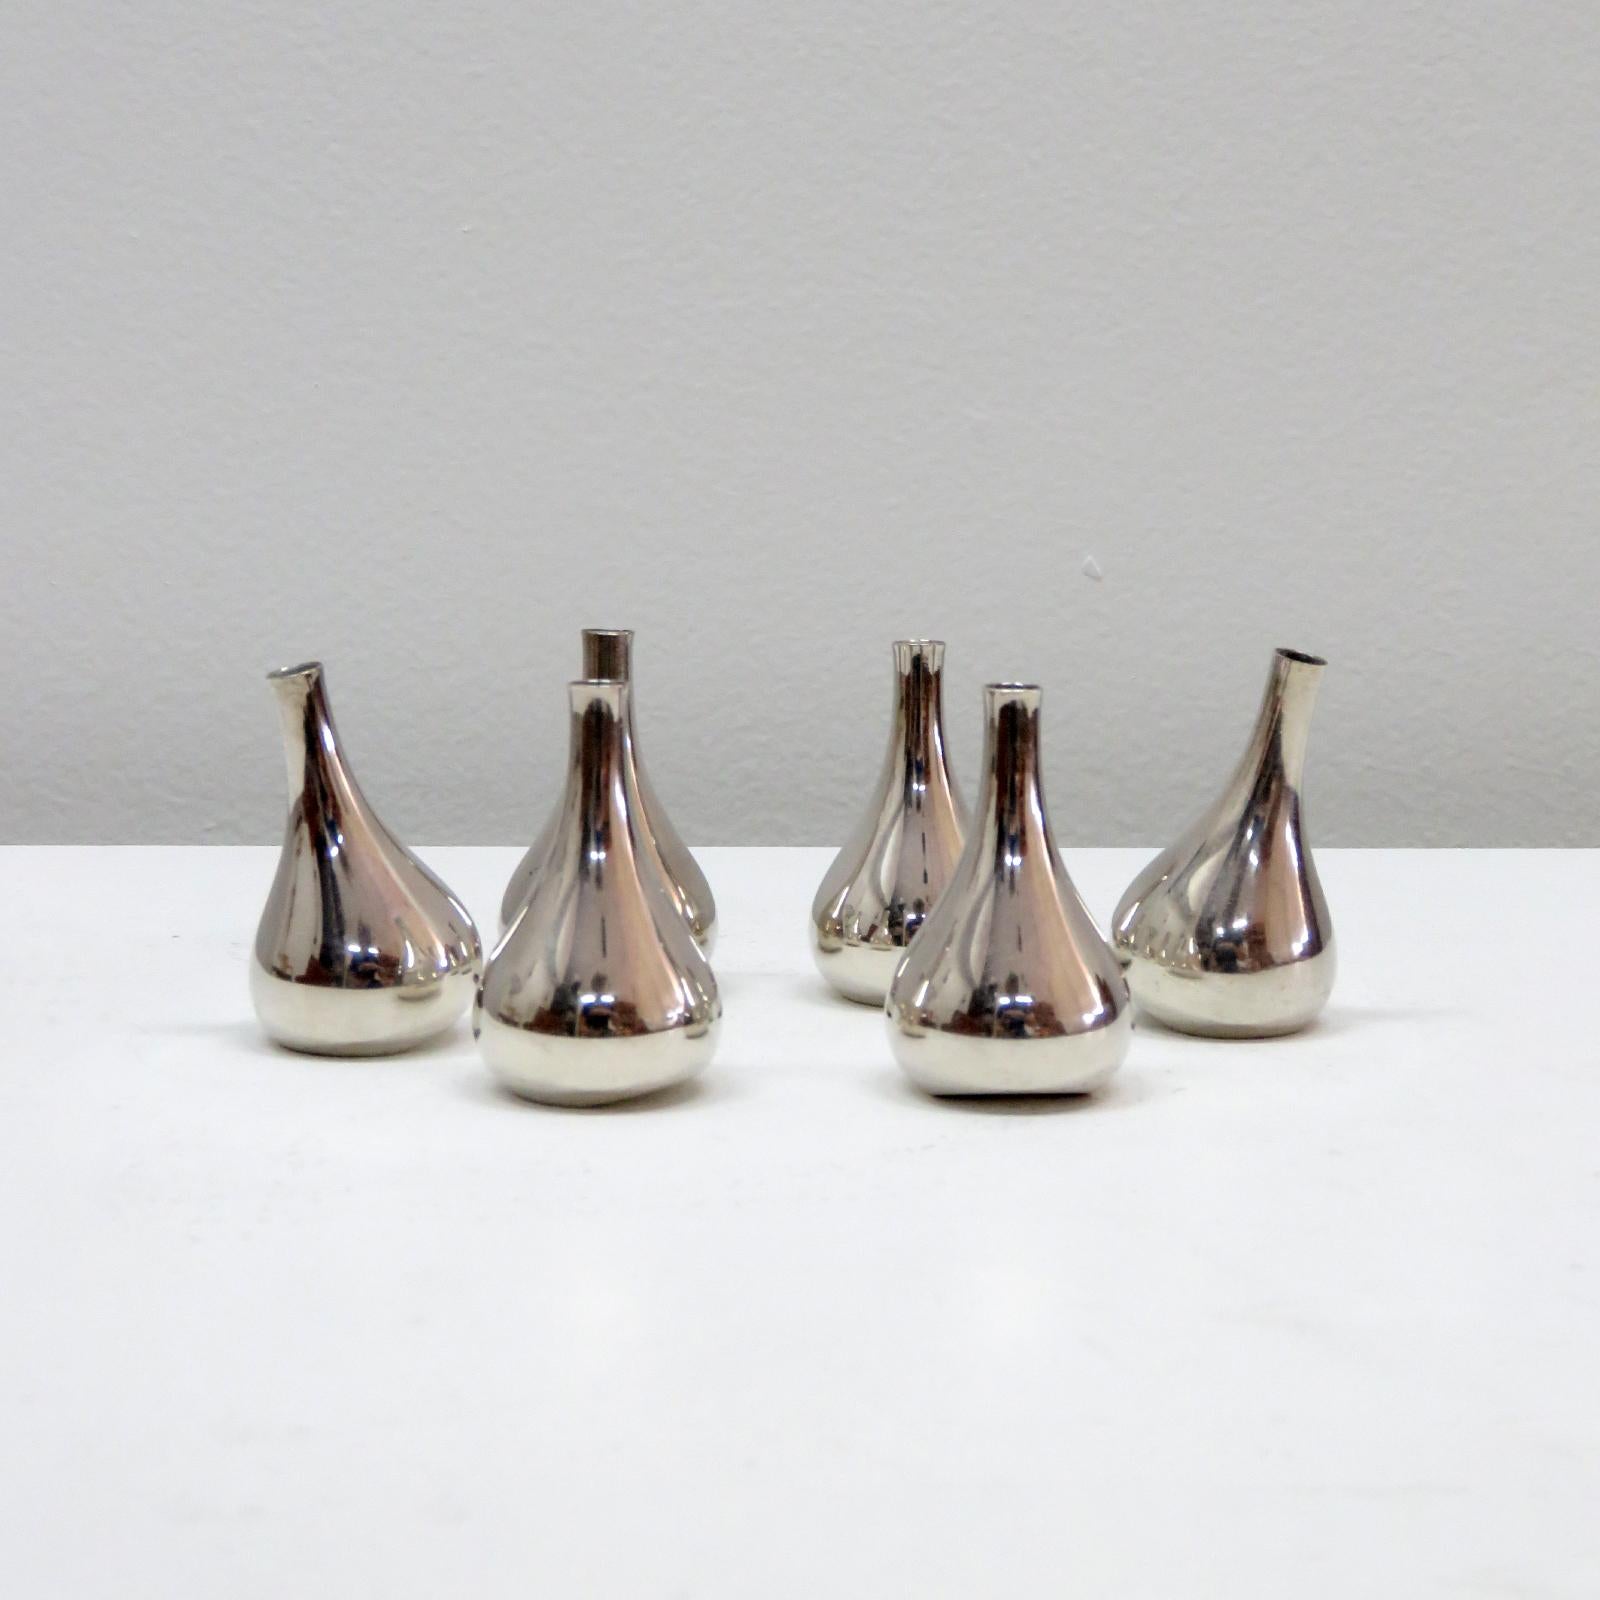 Magnifique ensemble de six bougeoirs en forme de goutte d'eau de Jens Quistgaard pour Dansk, vers les années 1960, en métal argenté. Idéal pour les bougies coniques de 1/4